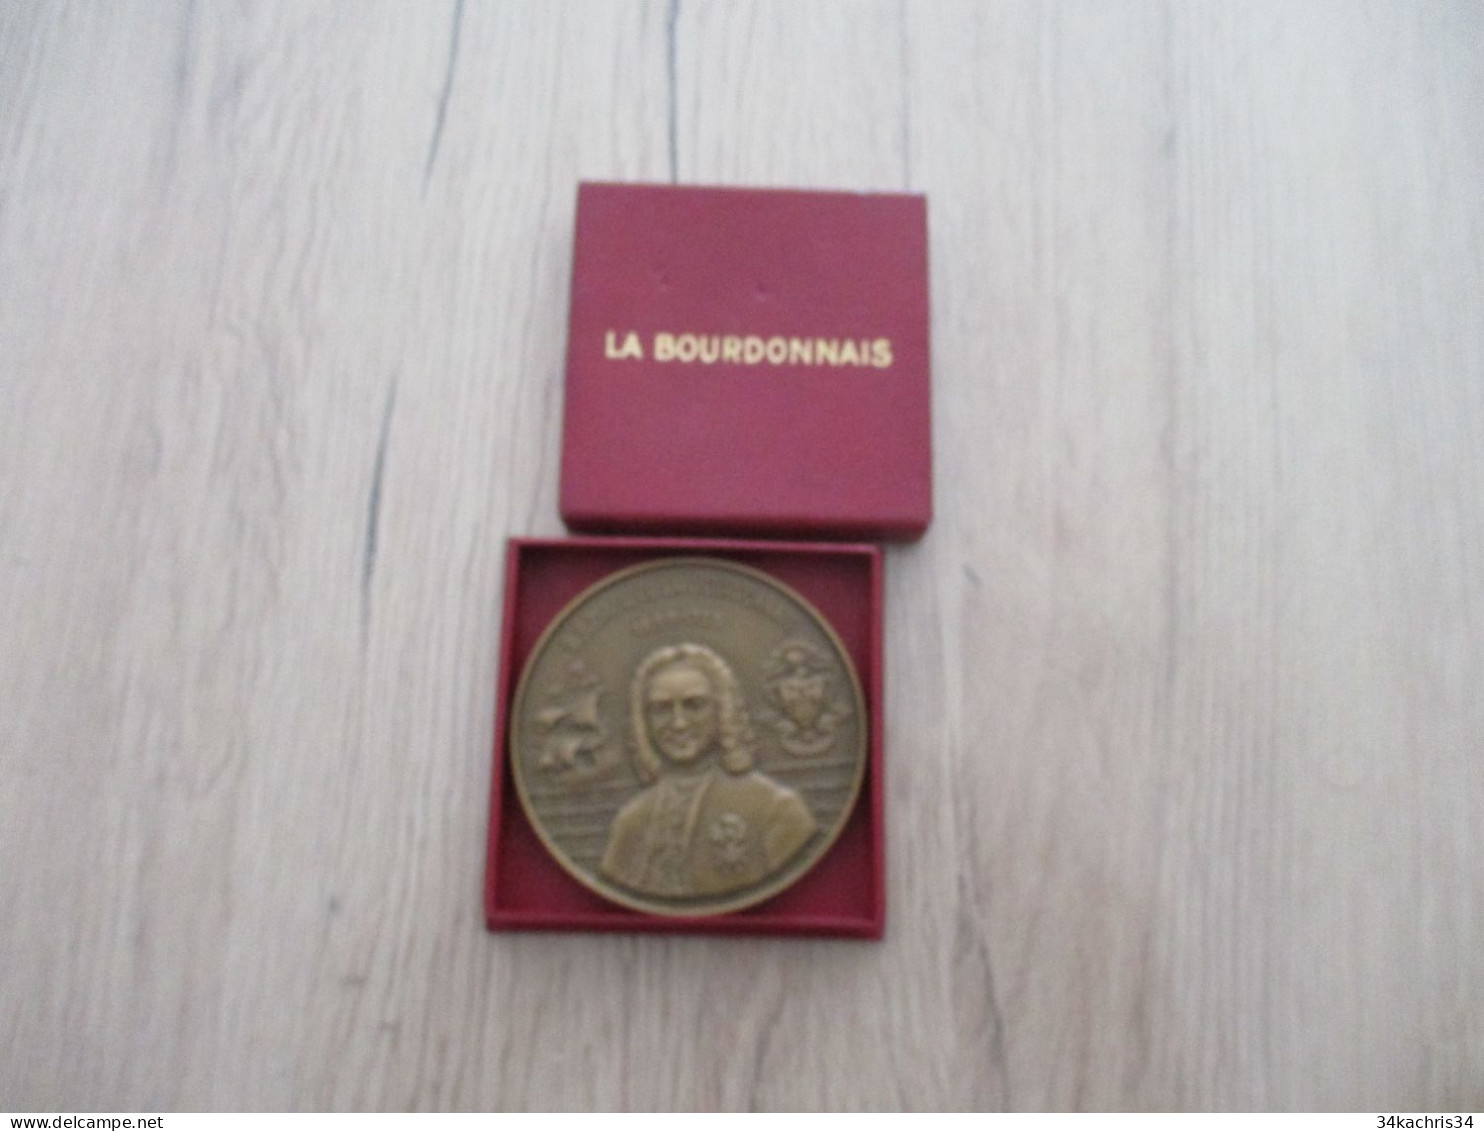 Médaille De Table La Bourdonnais Compagnies Messageries Maritimes 1953 5.5 Diam 100g Environs Dans Sa Boite - Maritime Decoration